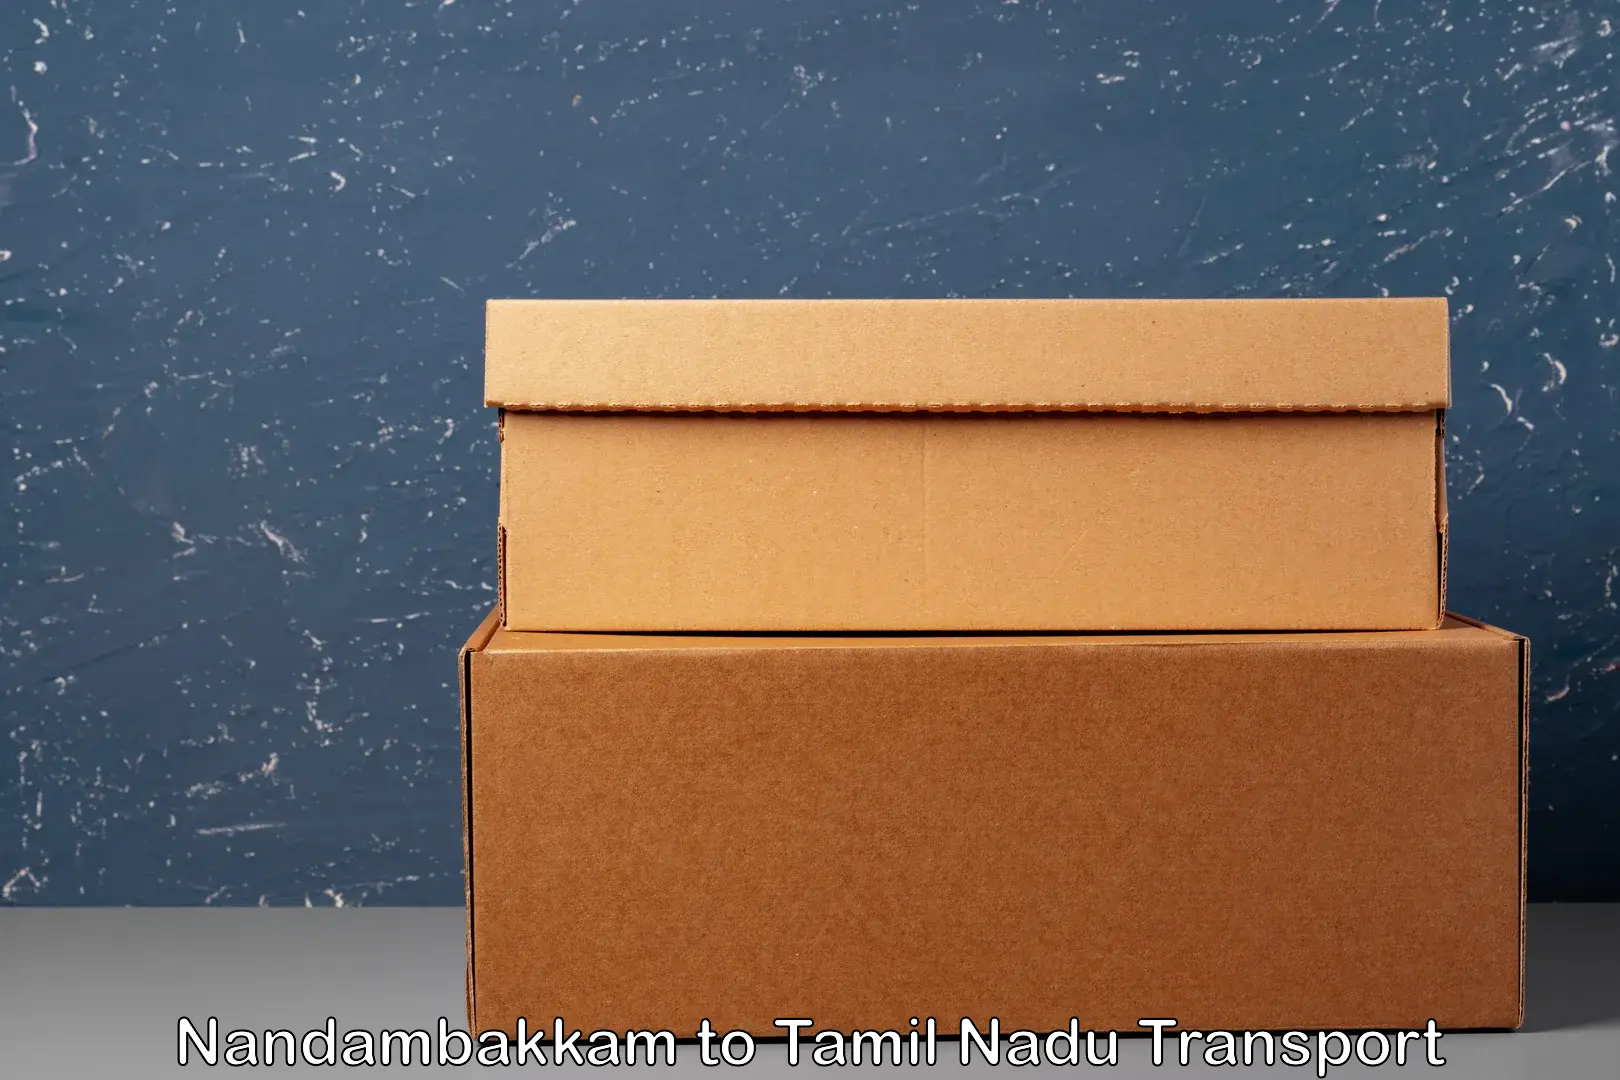 Shipping partner Nandambakkam to Tamil Nadu